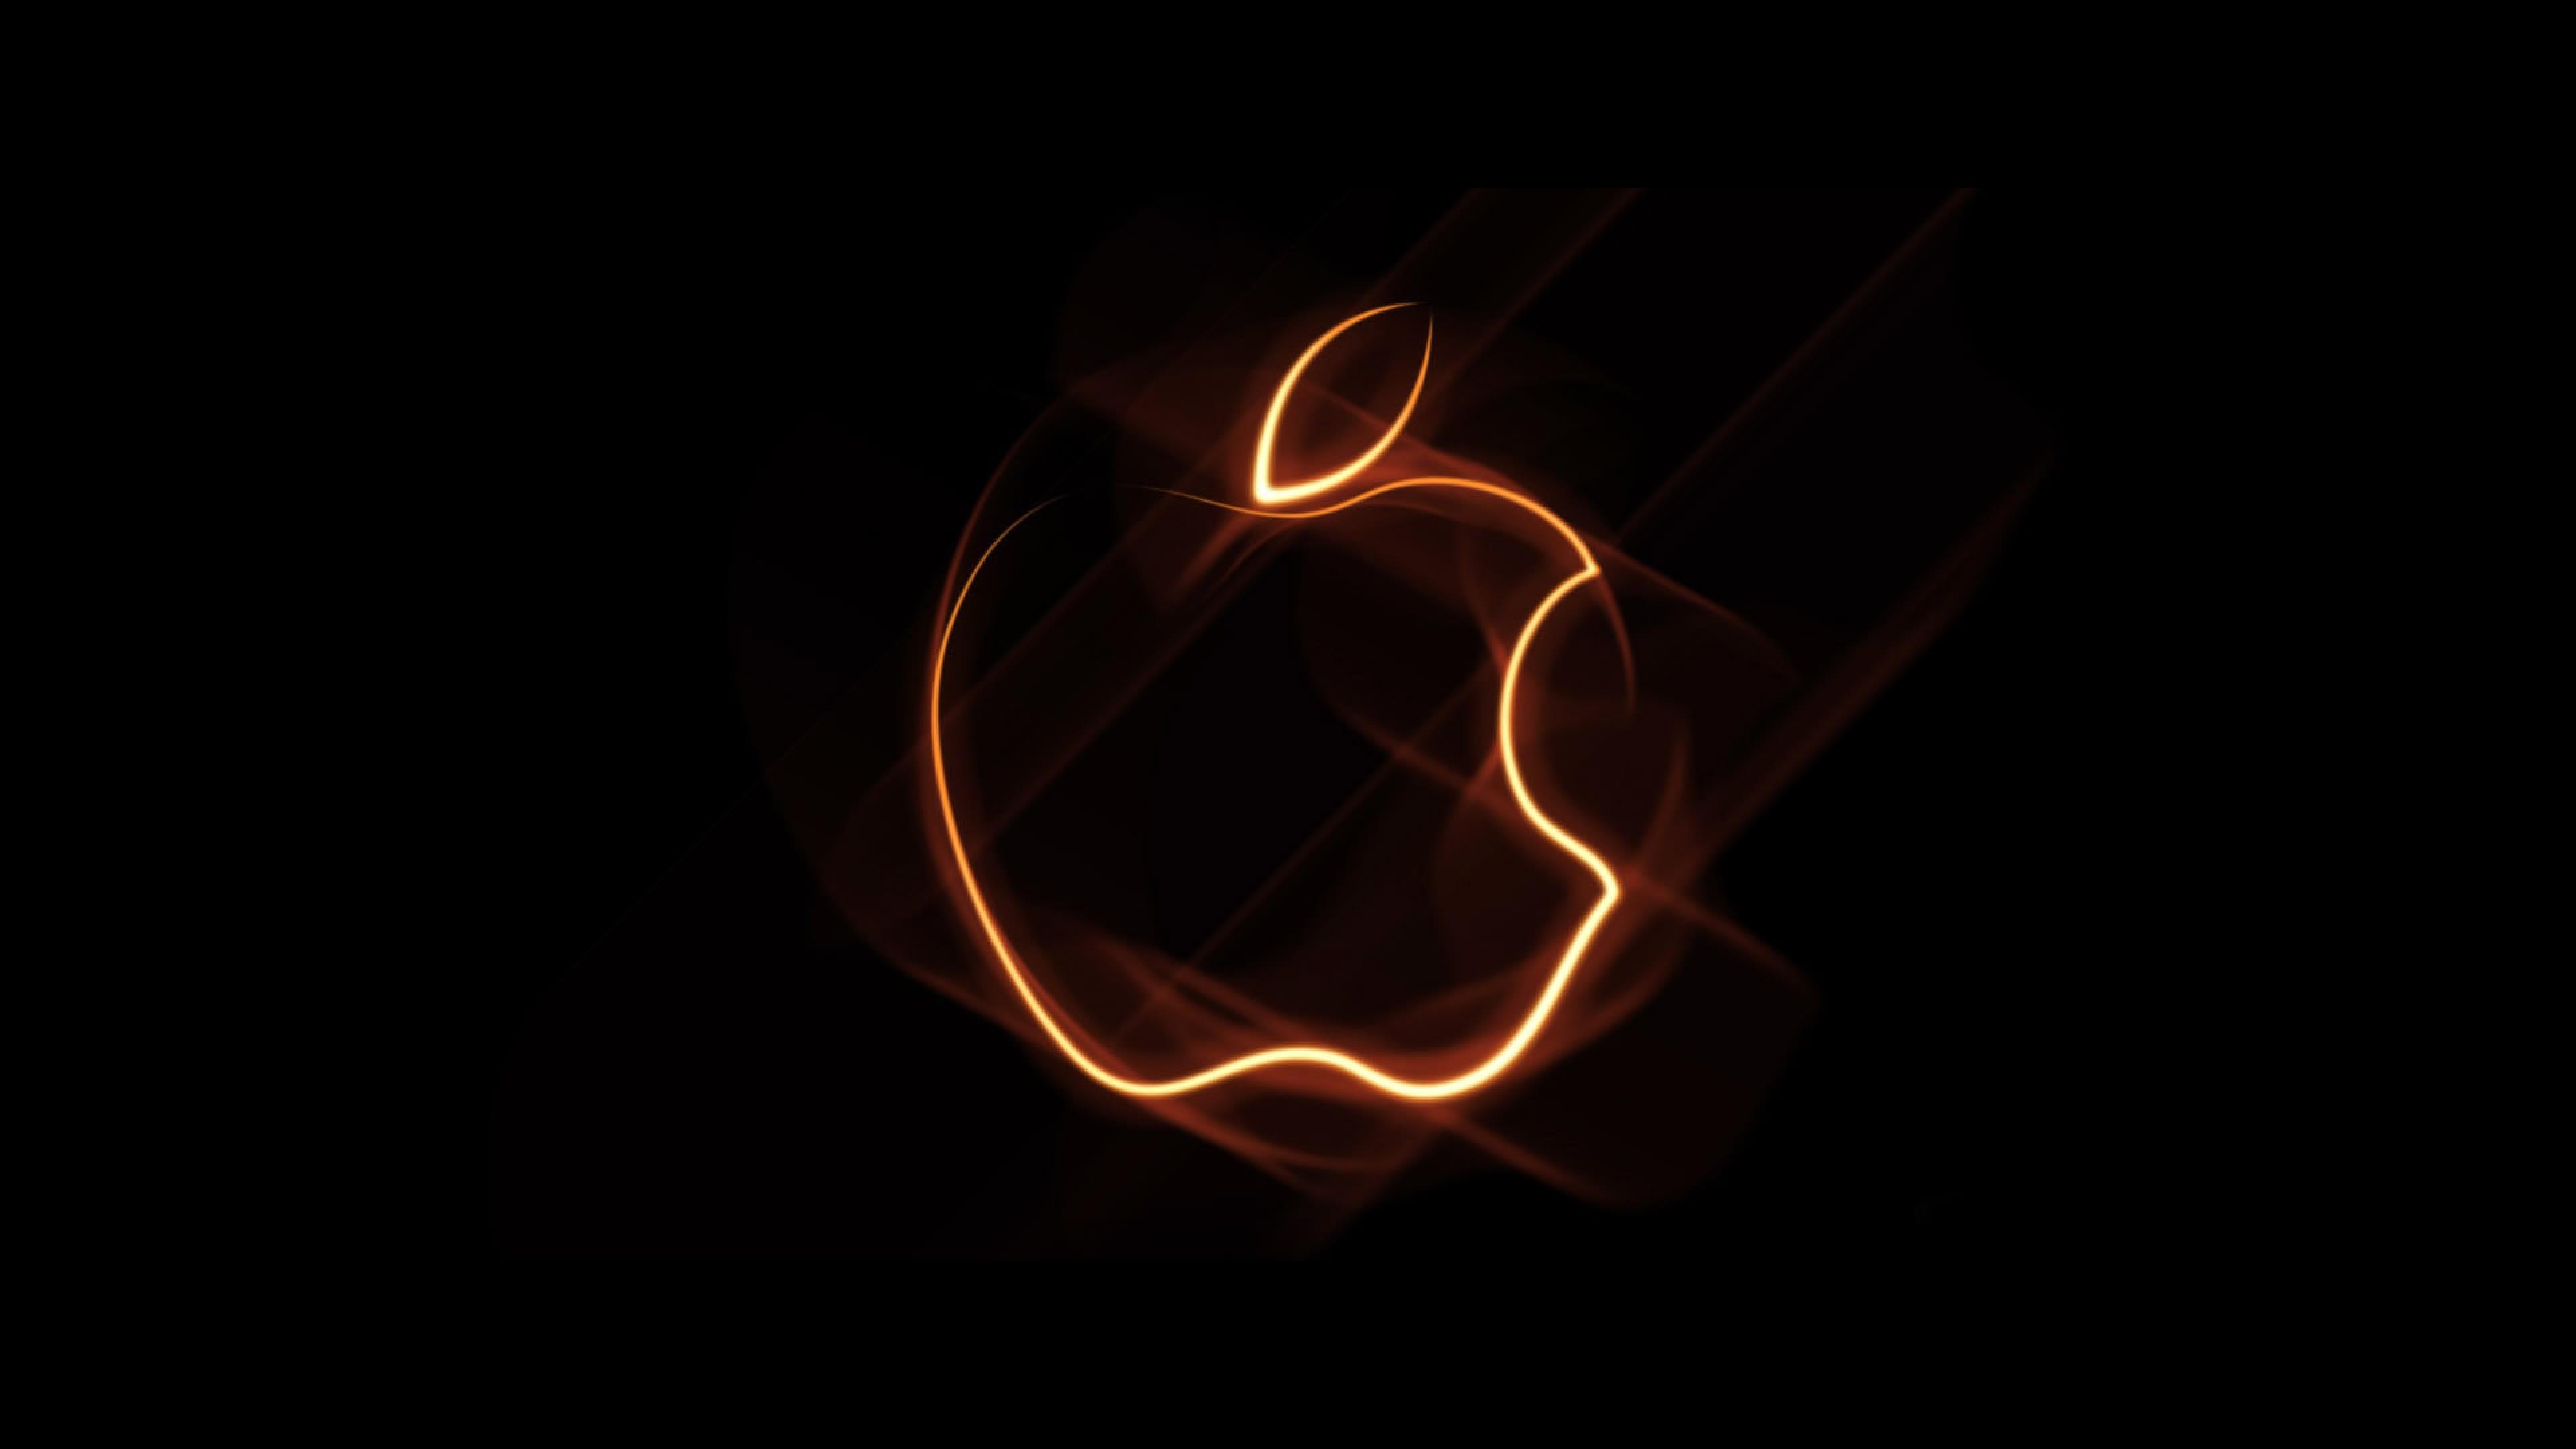 Ý tưởng tuyệt vời cho những ai muốn làm mới không gian máy tính của họ là tìm cho mình một bức ảnh nền táo Apple độc đáo. Không còn những hình ảnh tĩnh không tỉnh táo nữa, hãy trang trí màn hình của mình với những bức ảnh động tuyệt đẹp của táo Apple.